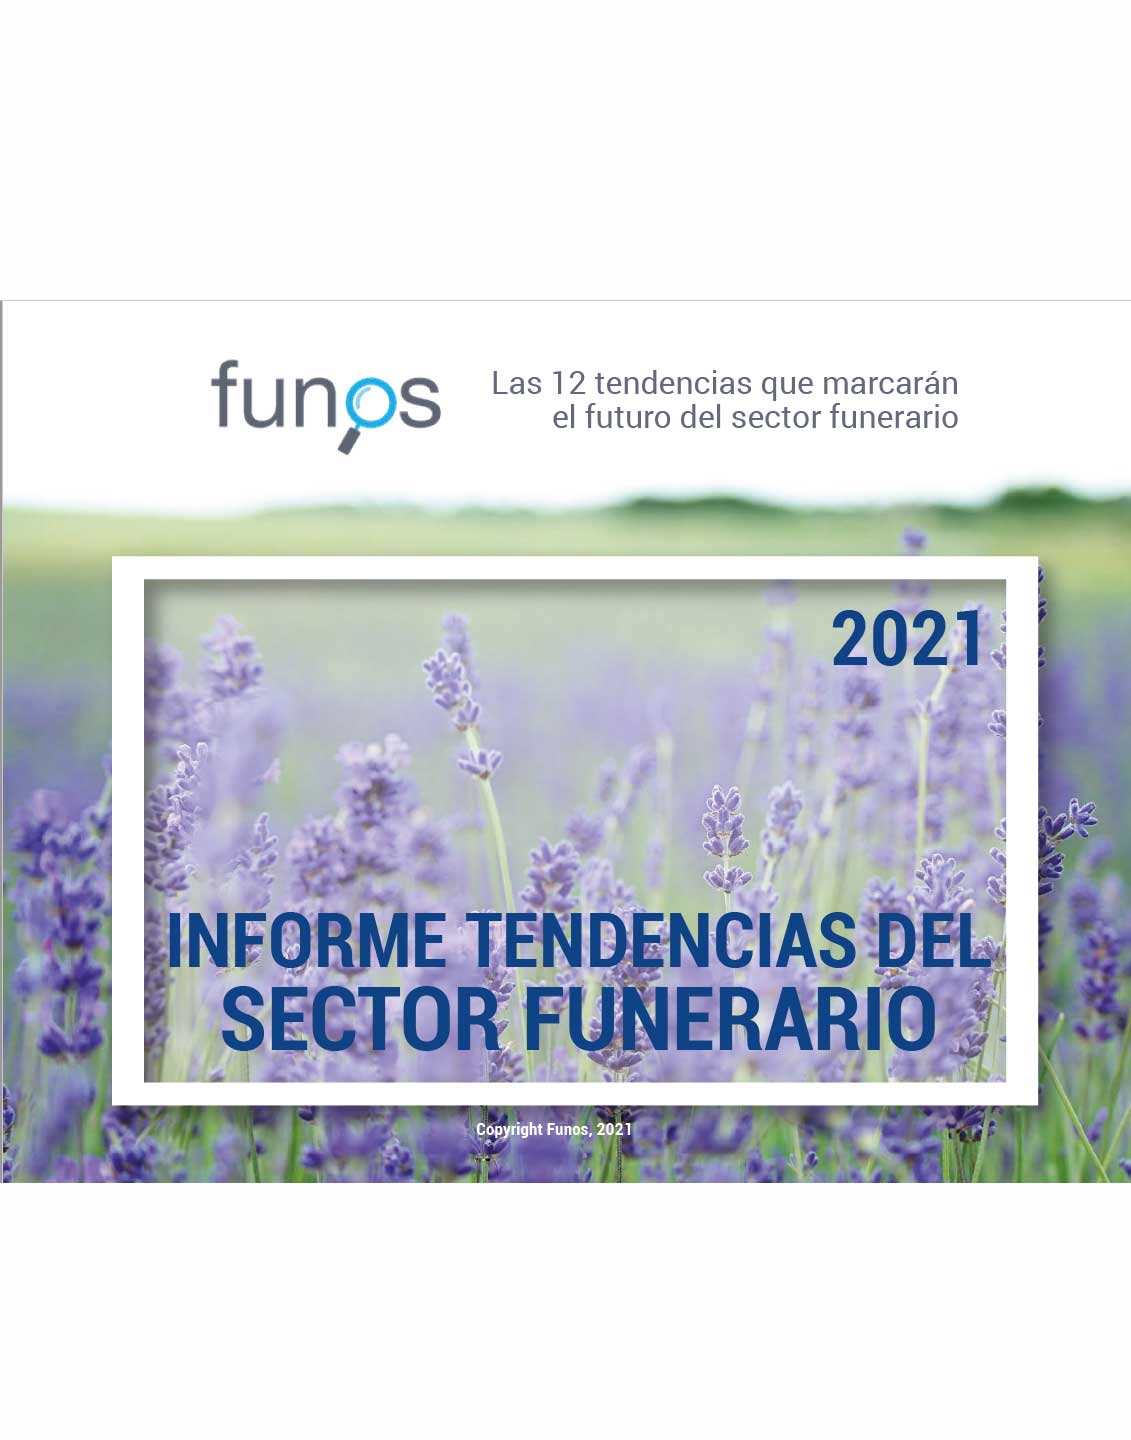 Las 12 tendencias que marcarán el futuro del sector funerario